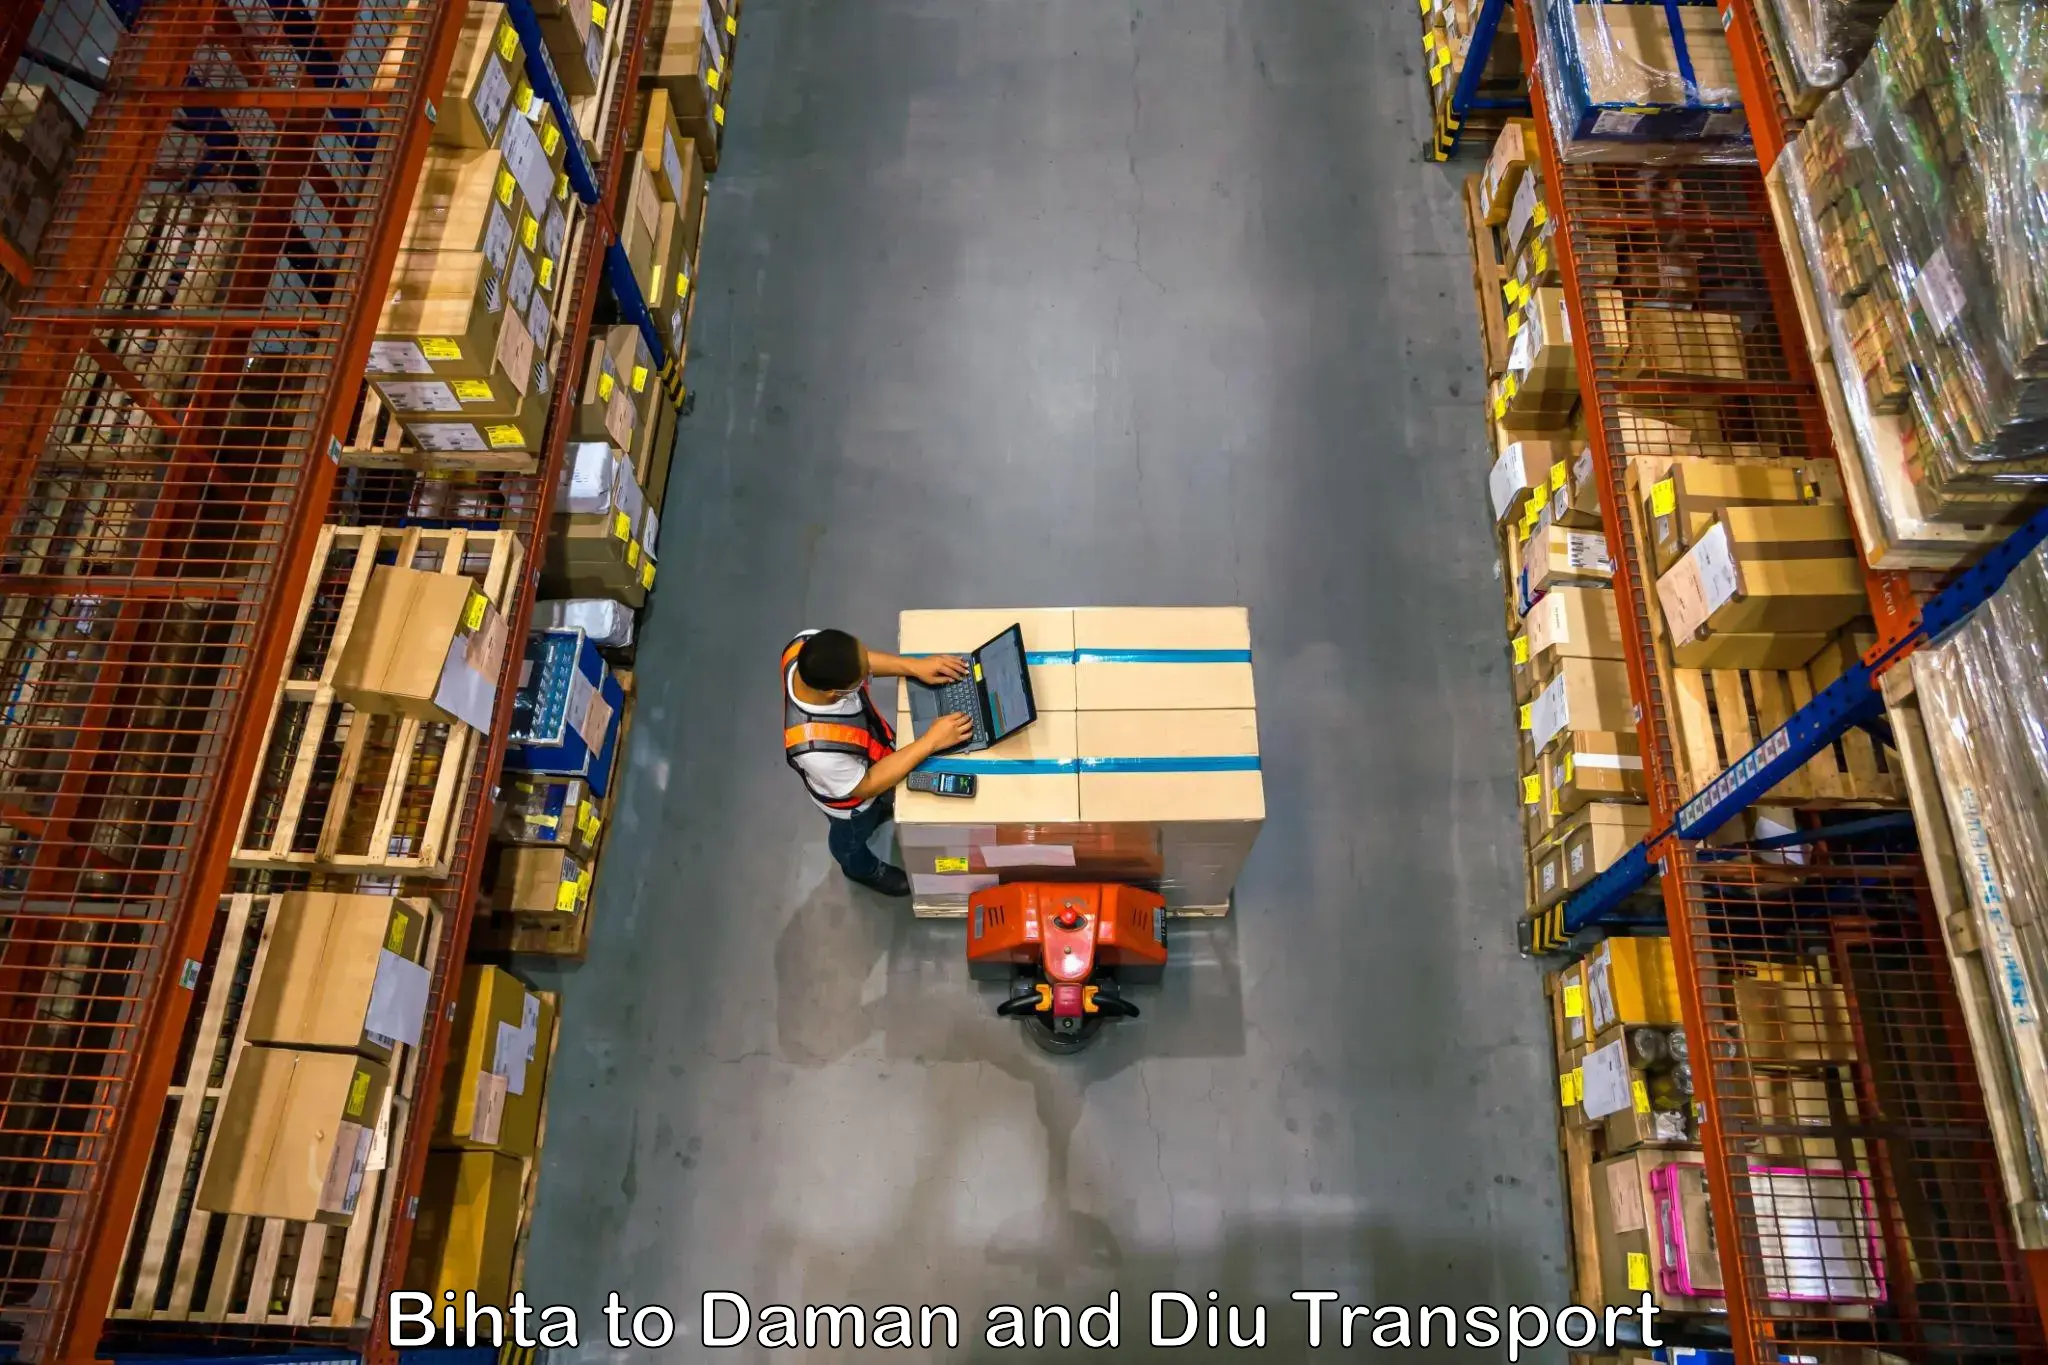 Logistics transportation services Bihta to Daman and Diu